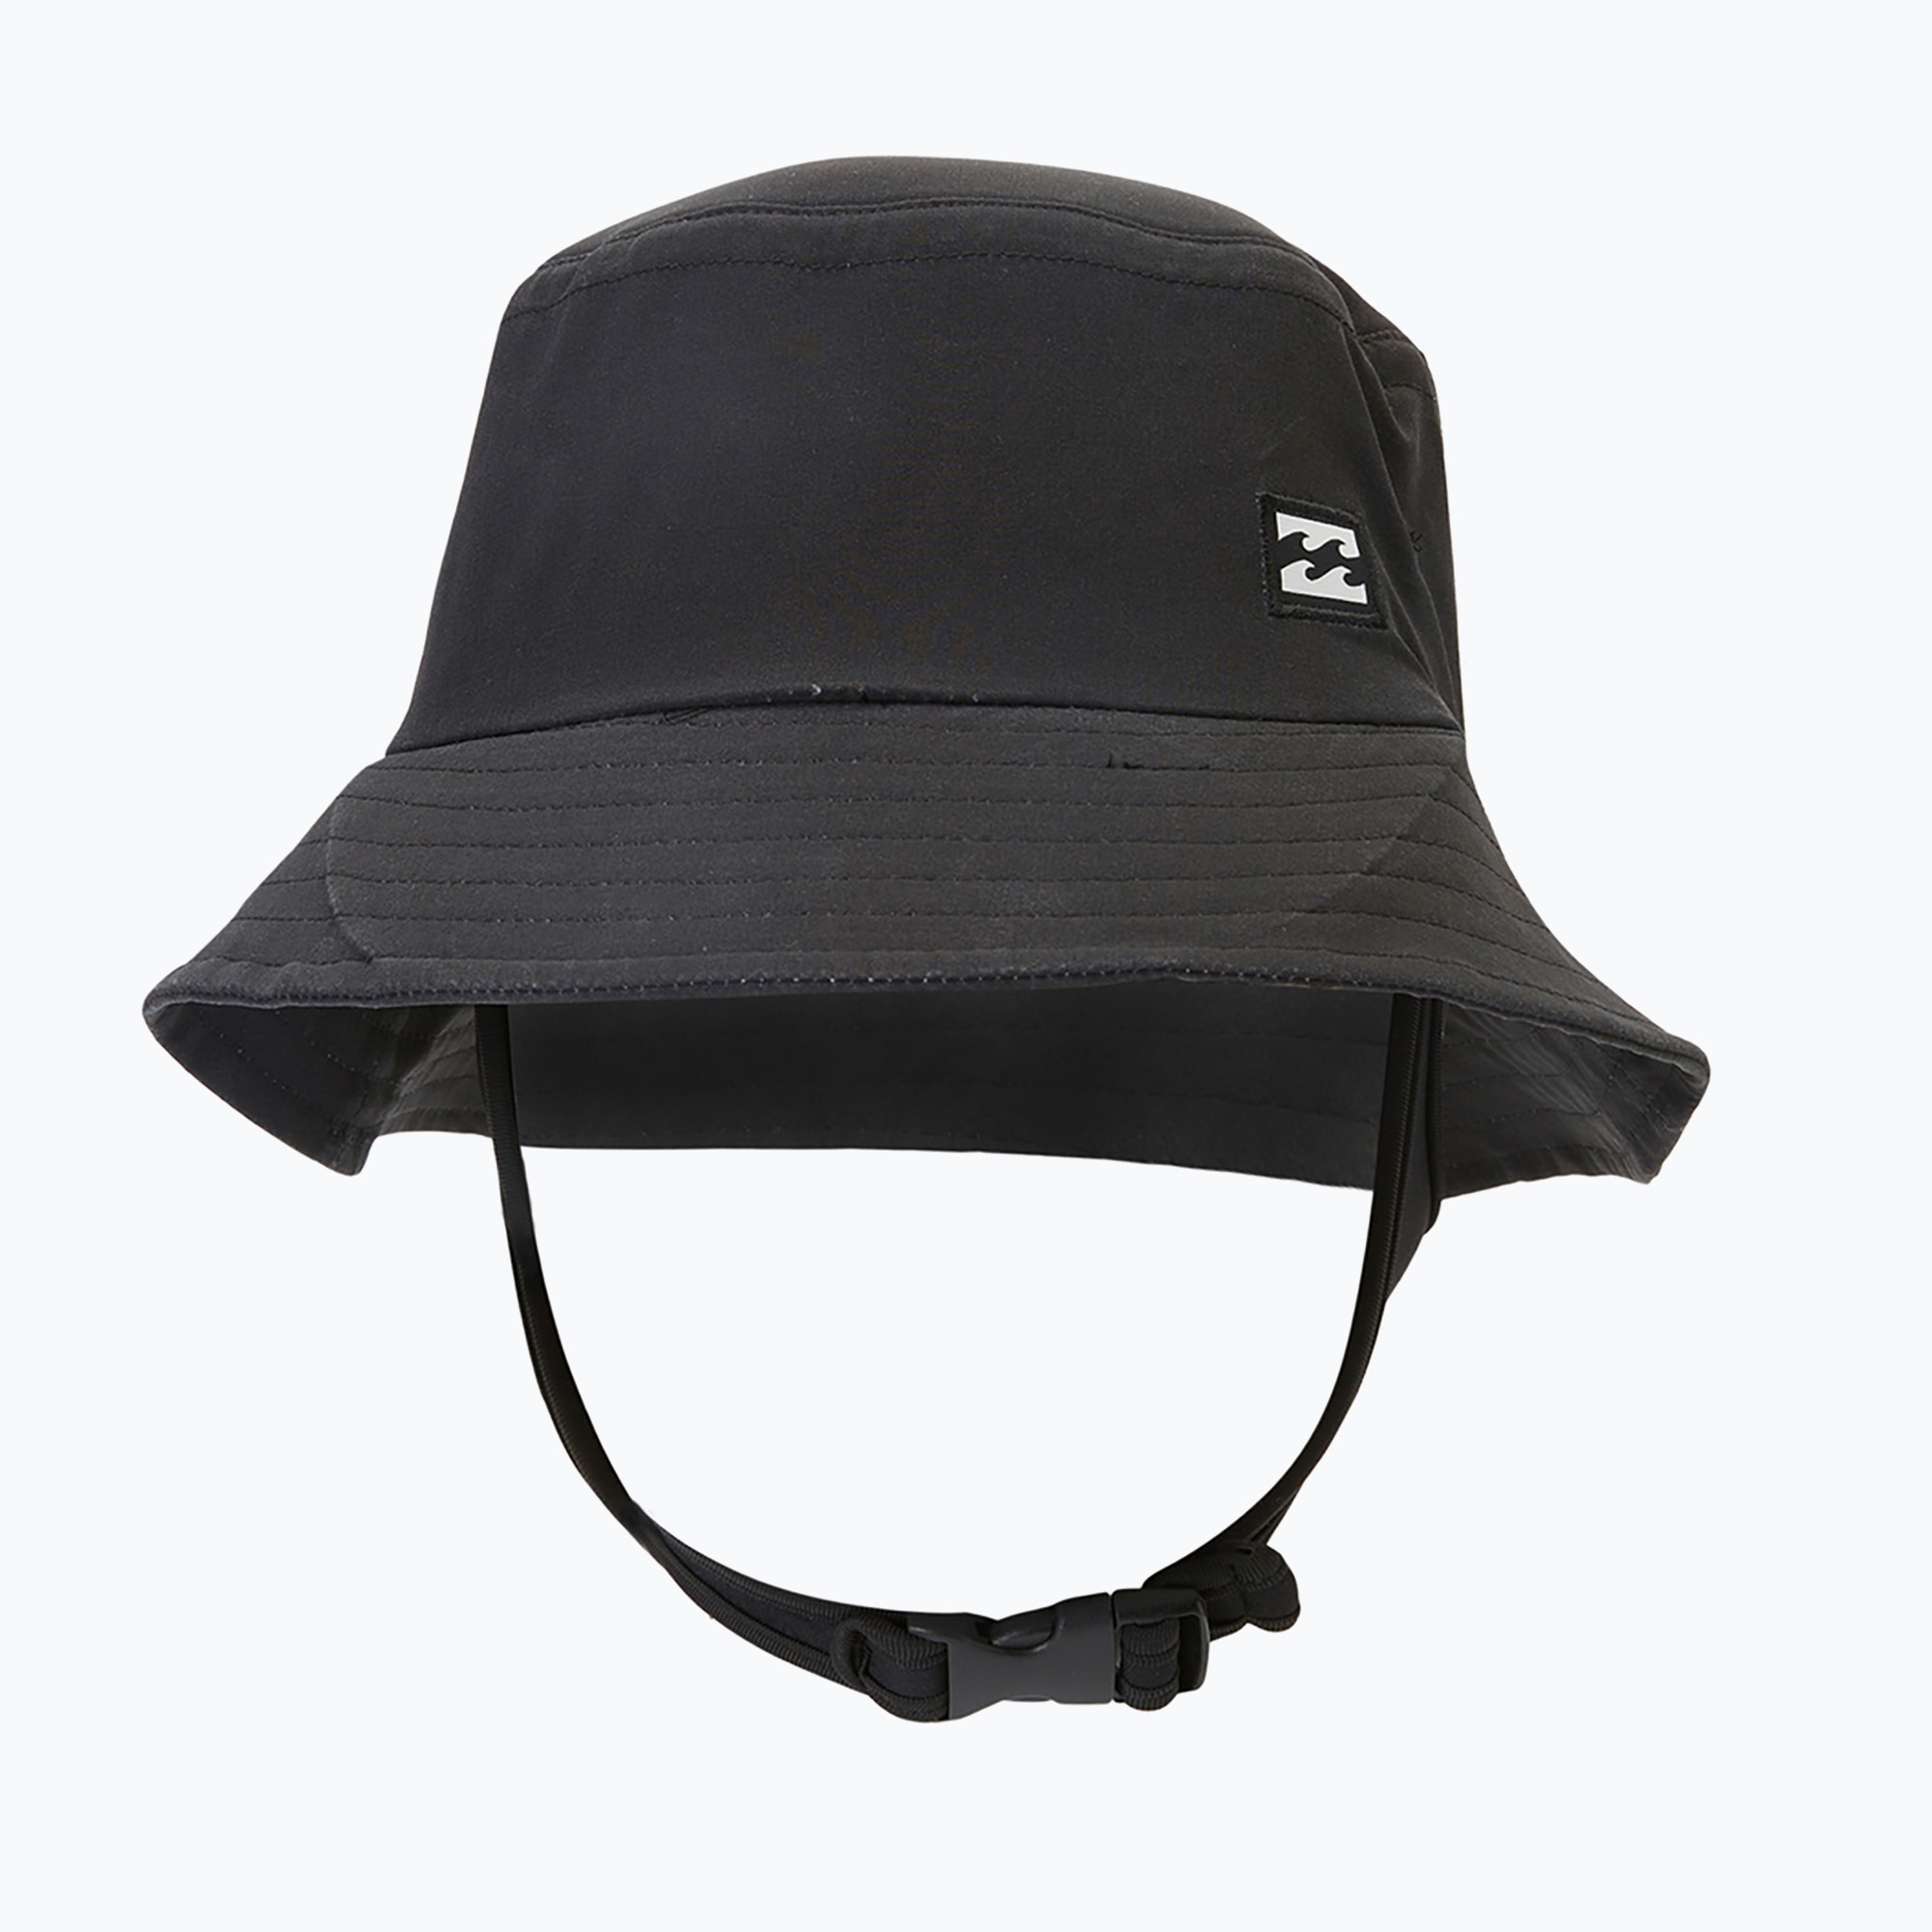 Мъжка шапка за сърф на Billabong, черна ABYWW00135